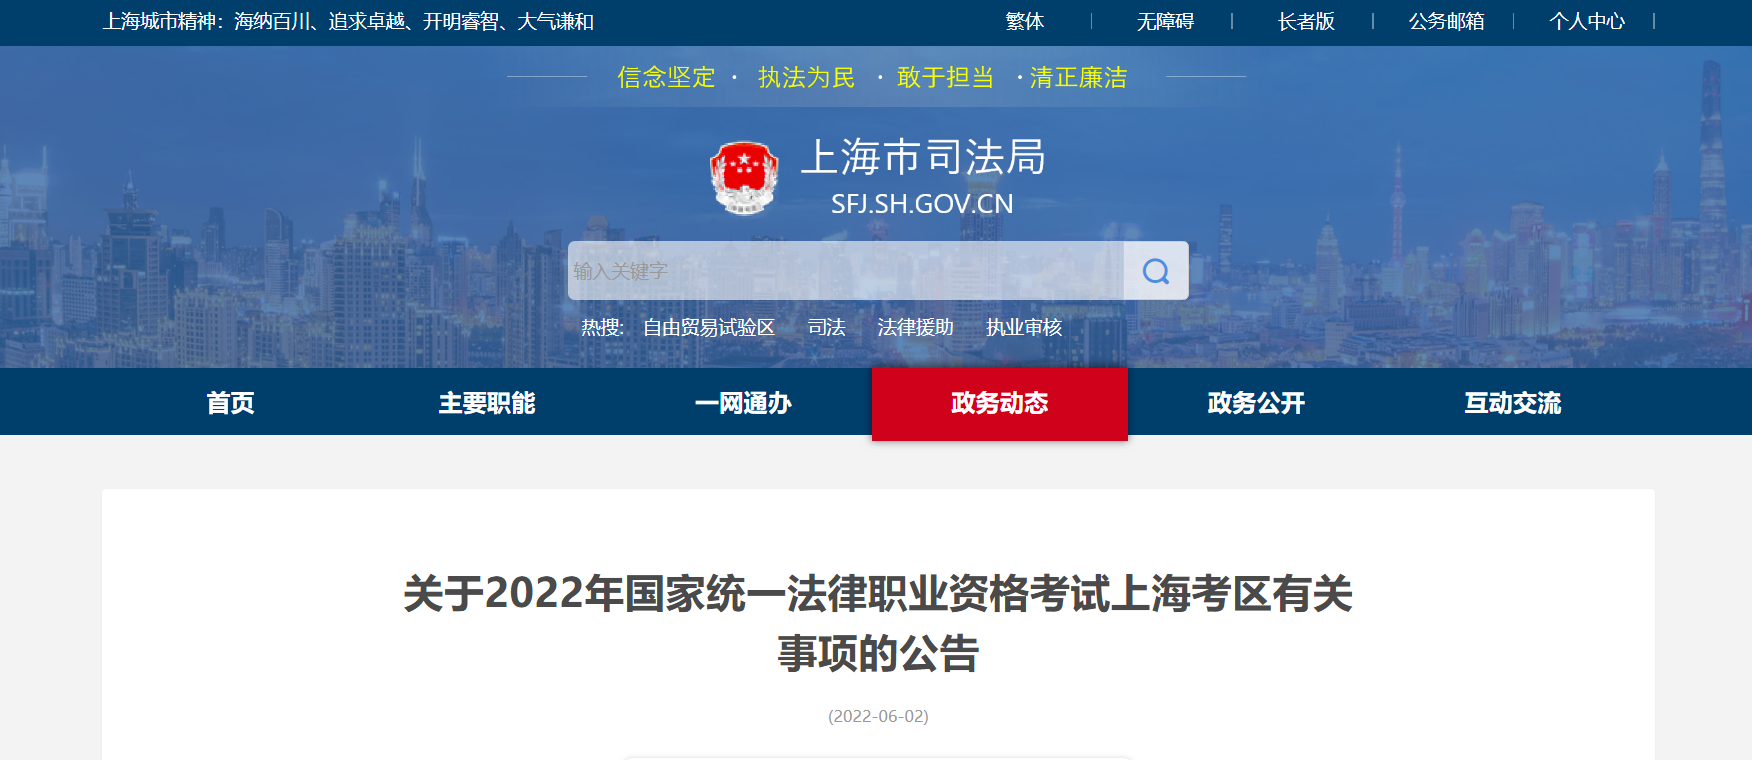 2022年上海国家统一法律职业资格考试资格审核及有关事项的公告